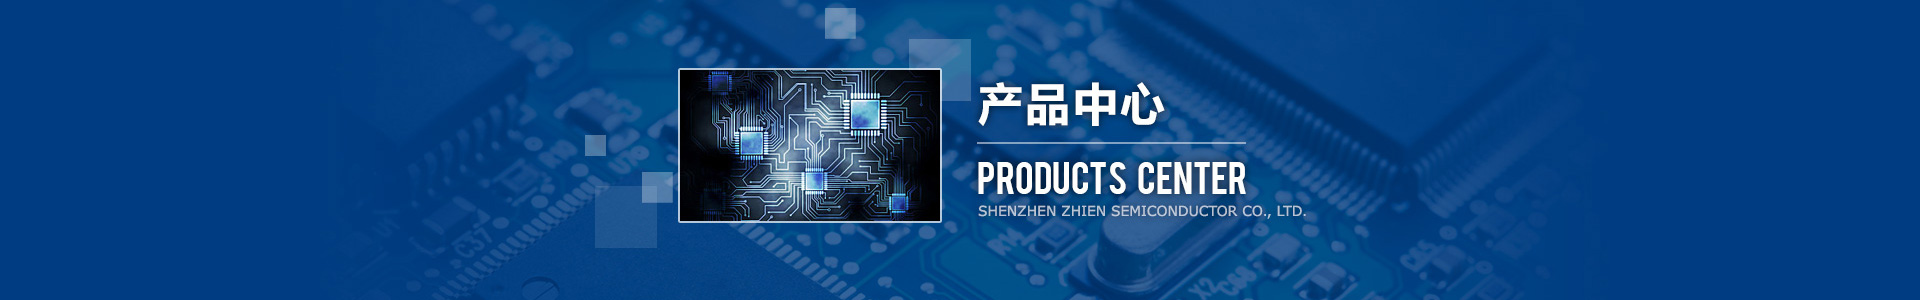 深圳市知恩半導體有限公司，應廣單片機，觸摸芯片，普芯達GF90F0320，MOS電源芯片。